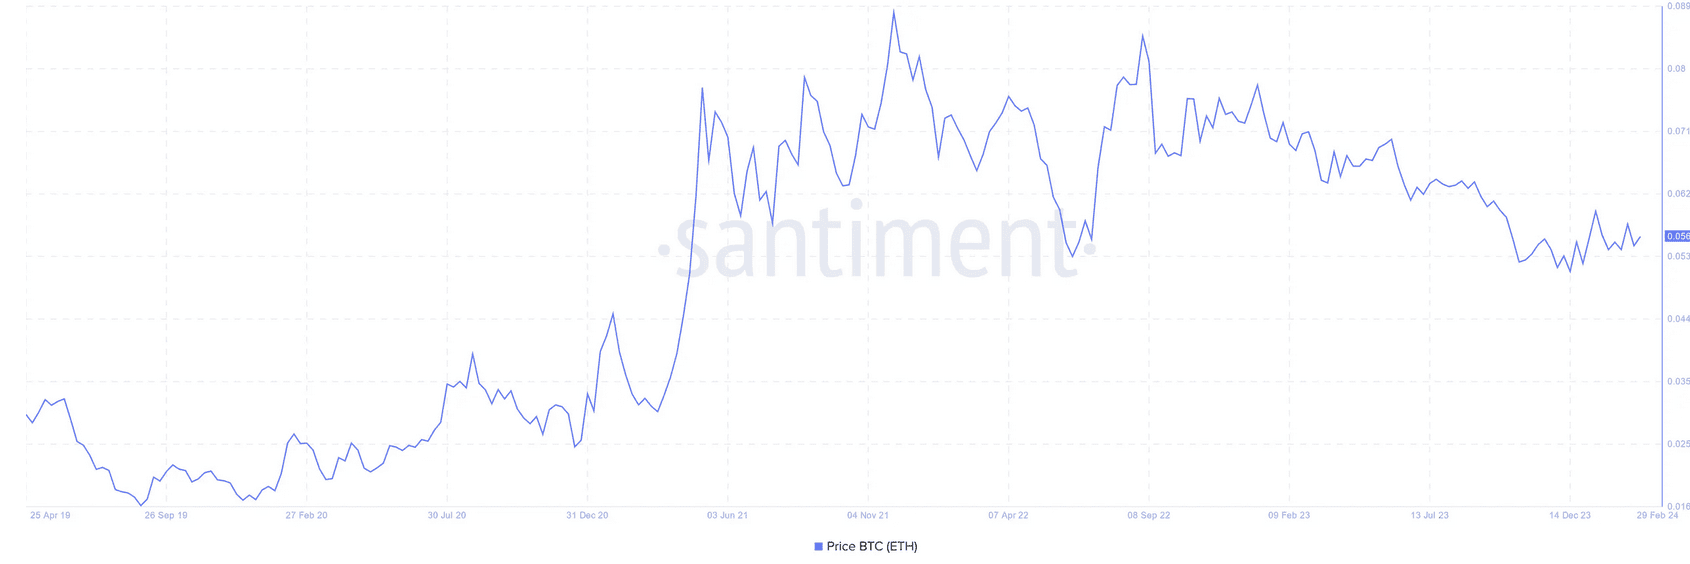 Ethereum/Bitcoin rate since April 2019. Source: Santiment